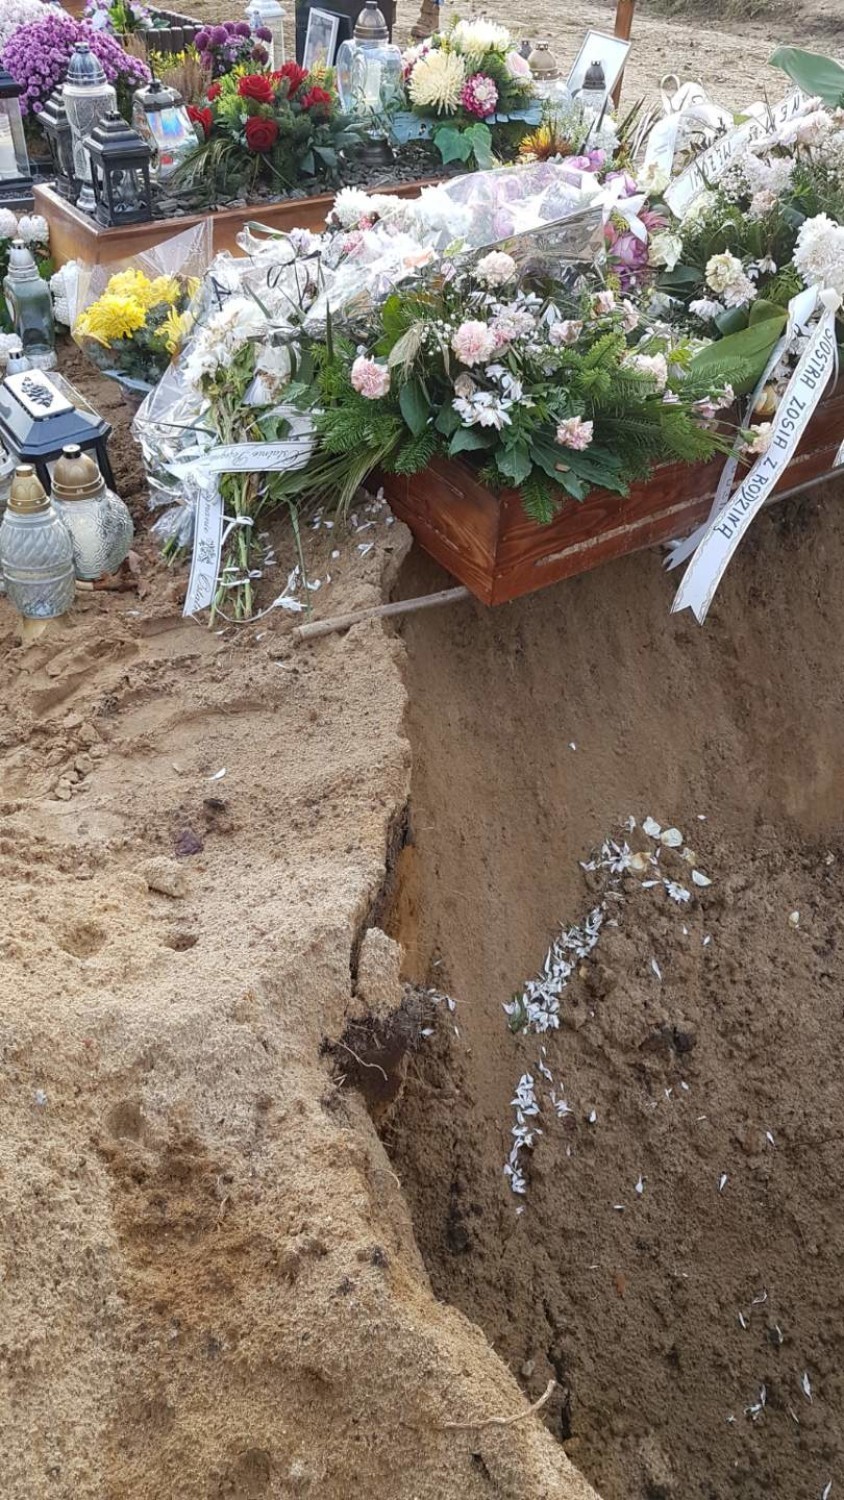 Podczas wykopywania grobu uszkodzono sąsiednią mogiłę. Rodzina domaga się naprawienia szkody